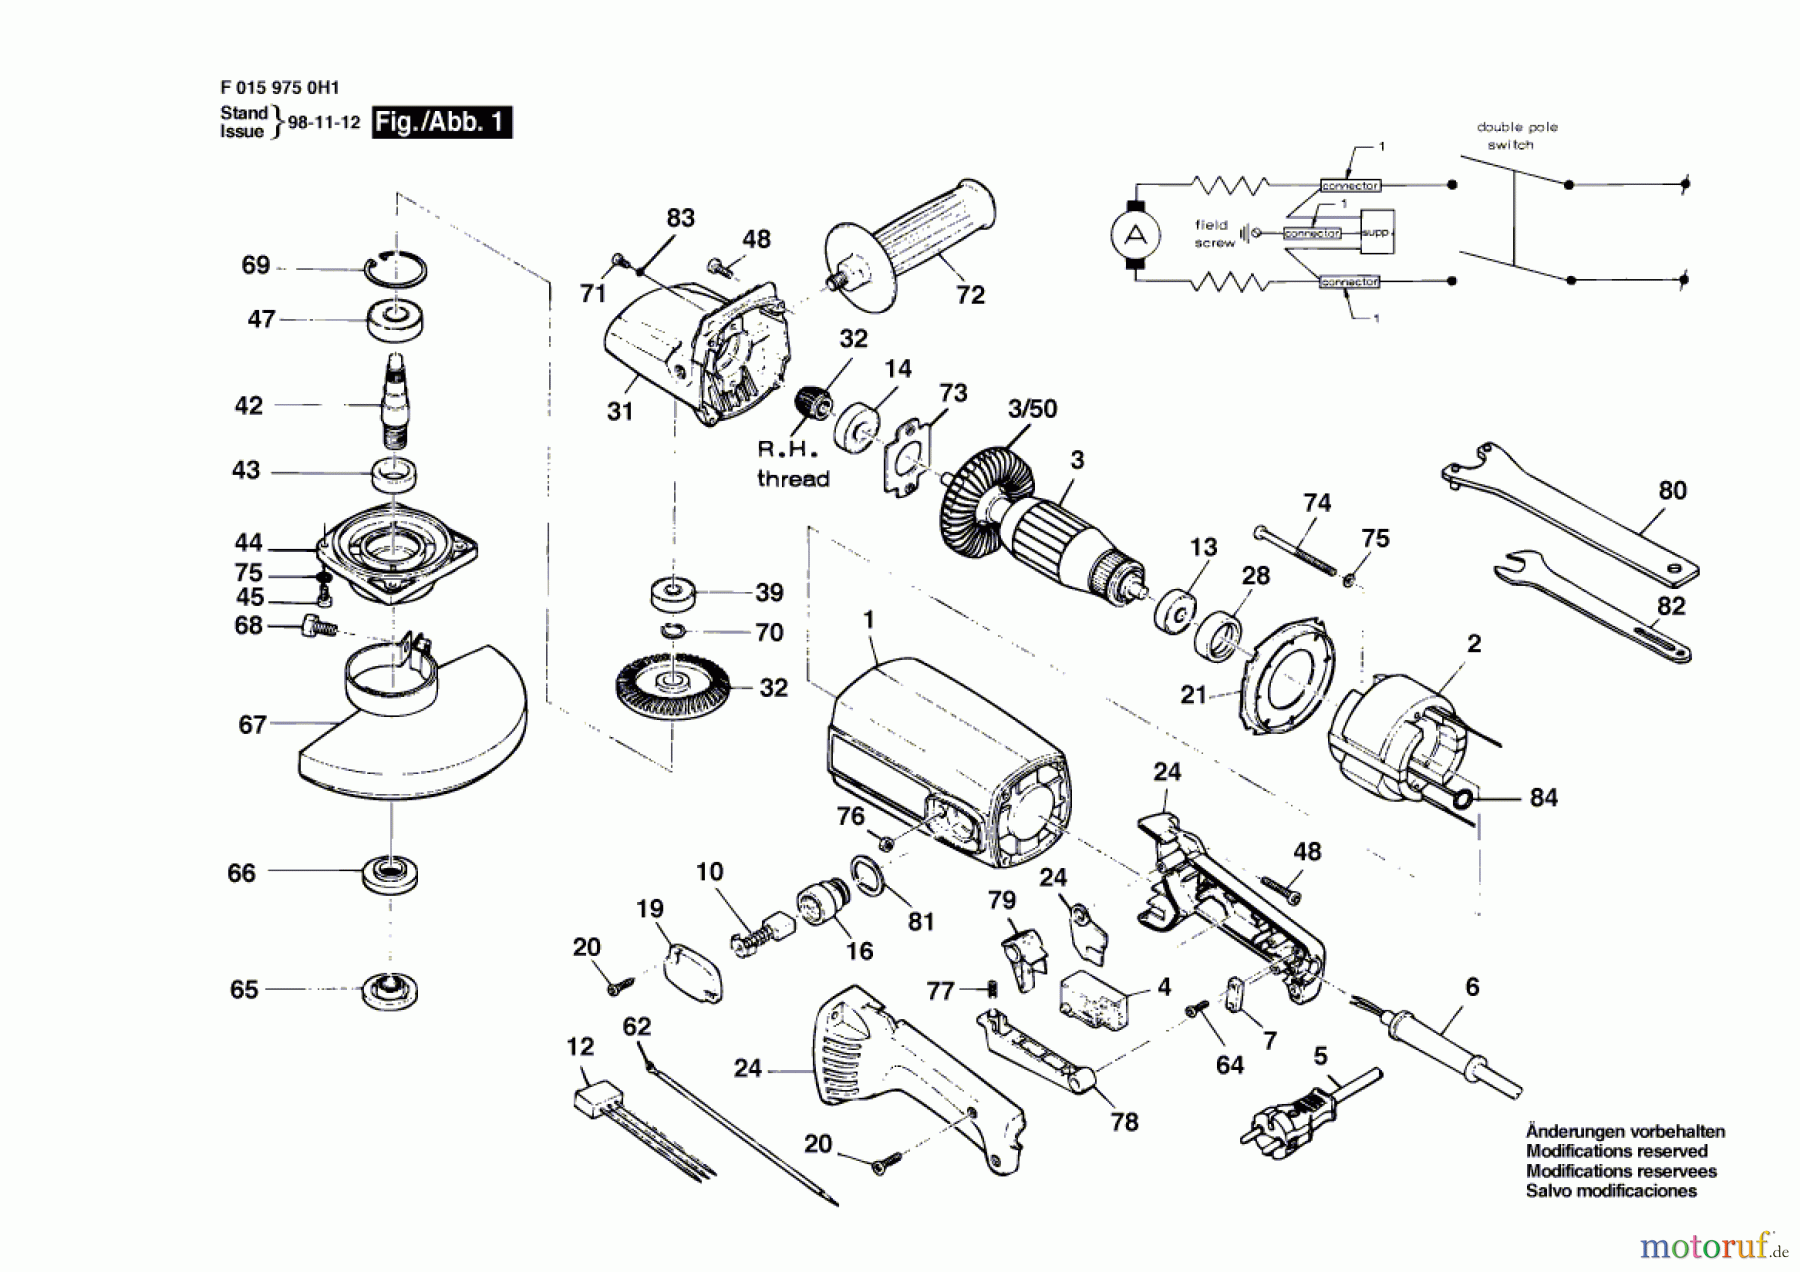  Bosch Werkzeug Winkelschleifer 9750 Seite 1